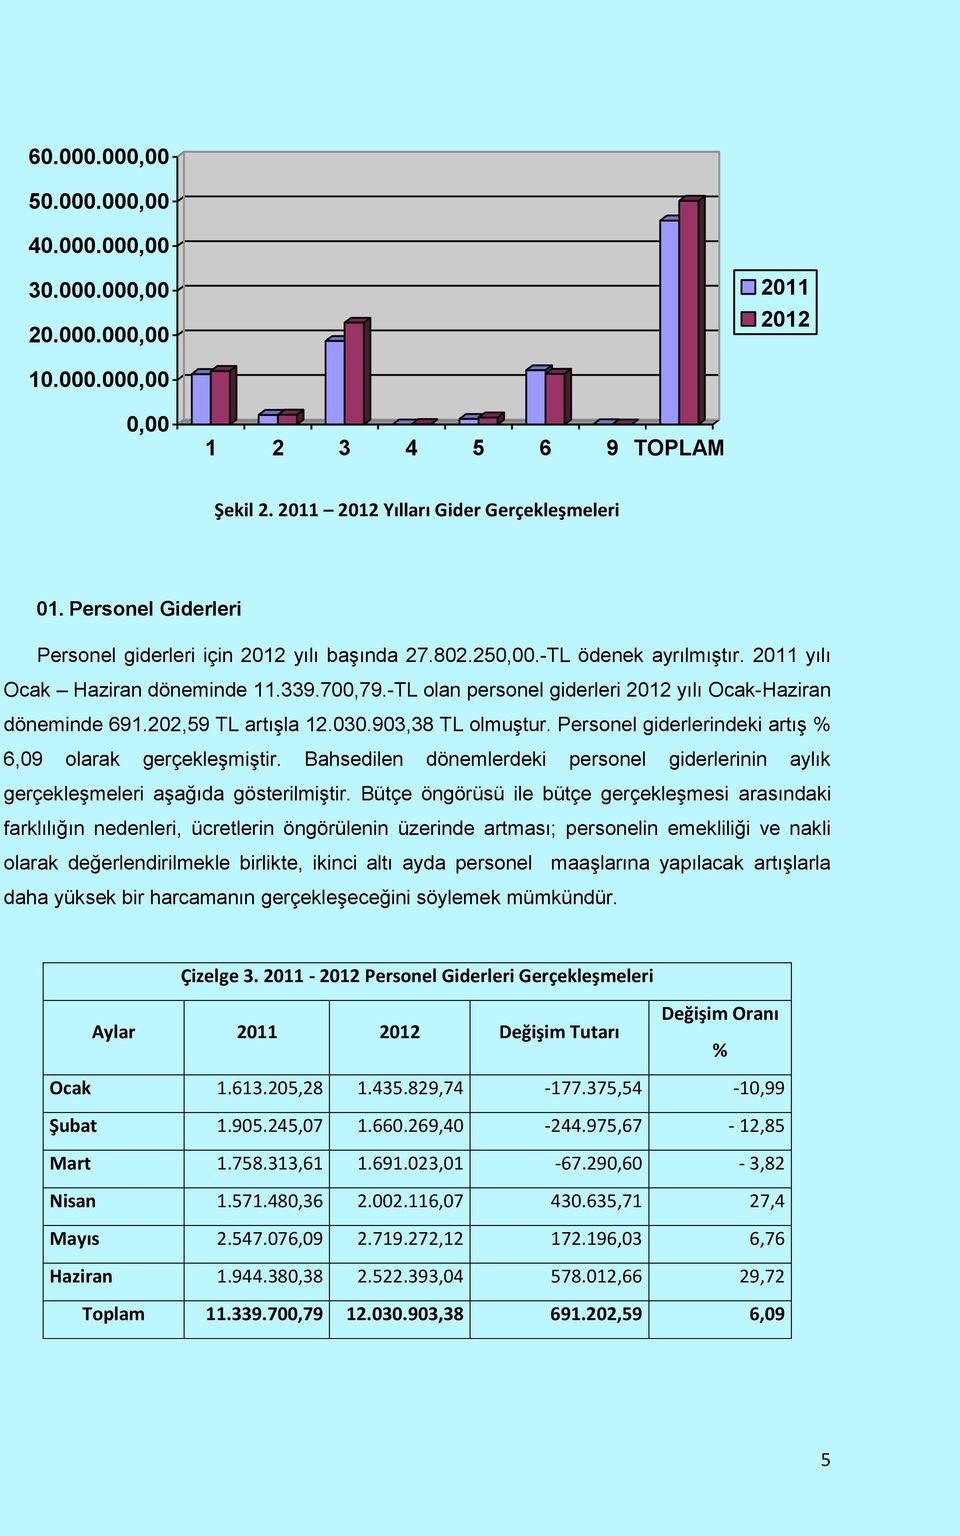 -TL olan personel giderleri yılı Ocak-Haziran döneminde 691.202,59 TL artışla 12.030.903,38 TL olmuştur. Personel giderlerindeki artış % 6,09 olarak gerçekleşmiştir.